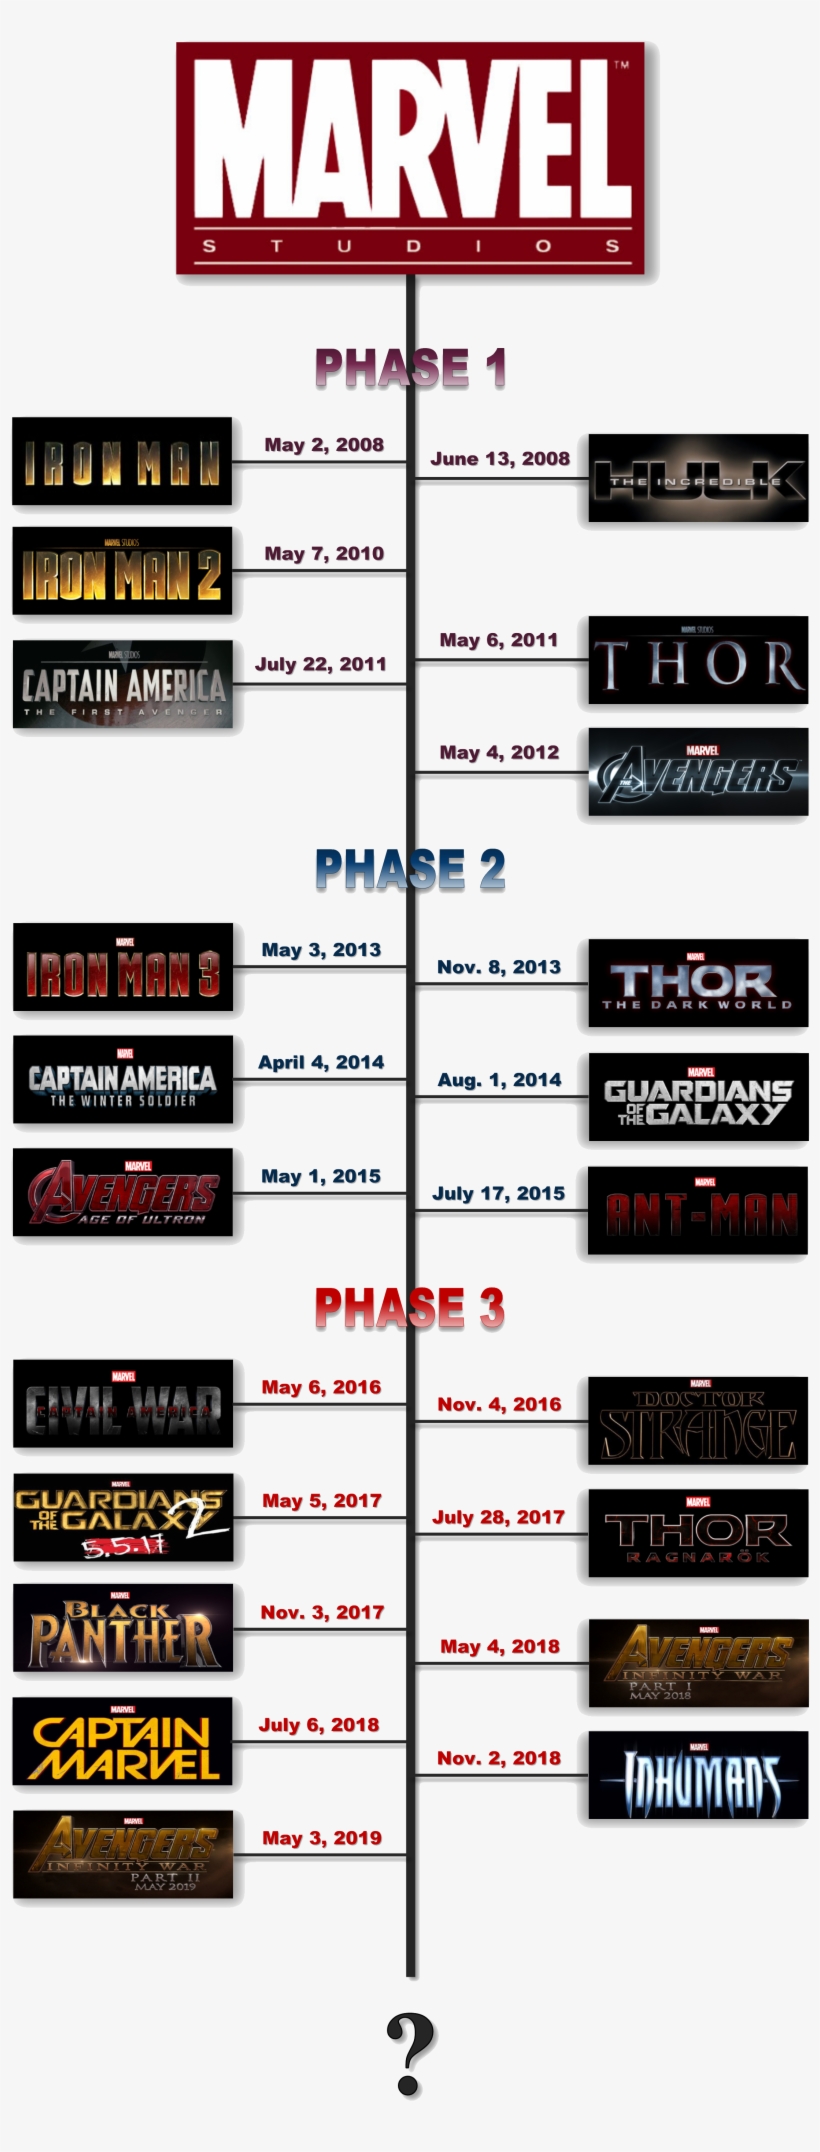 Marvel Movie Timeline - Marvel Movies Timeline, transparent png #1290726